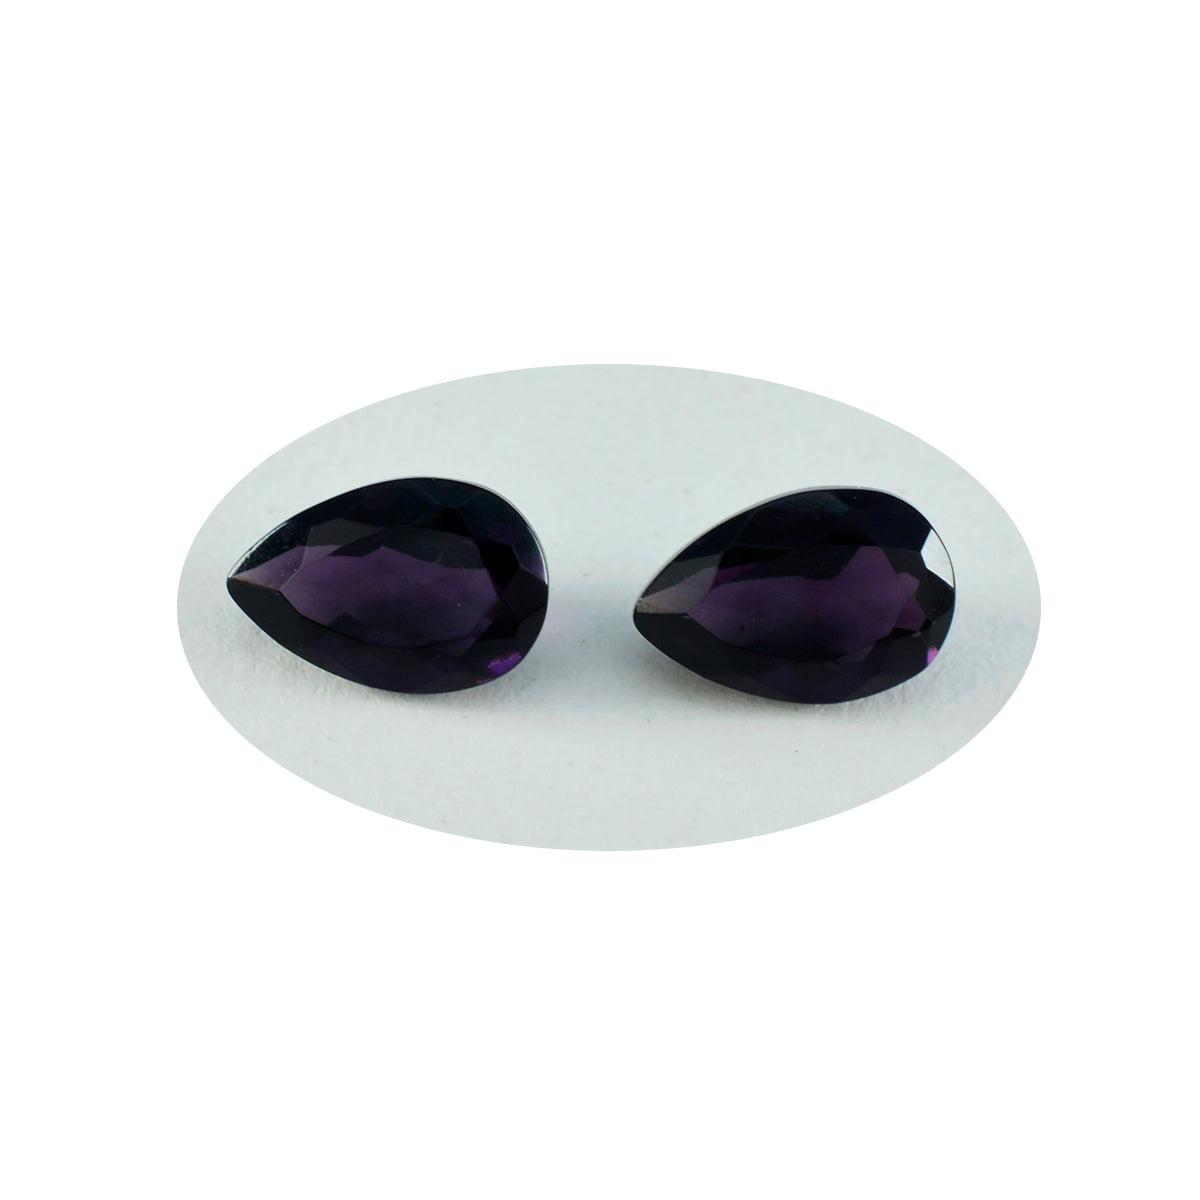 riyogems 1 шт. фиолетовый аметист cz граненый 6x9 мм грушевидной формы качественный драгоценный камень